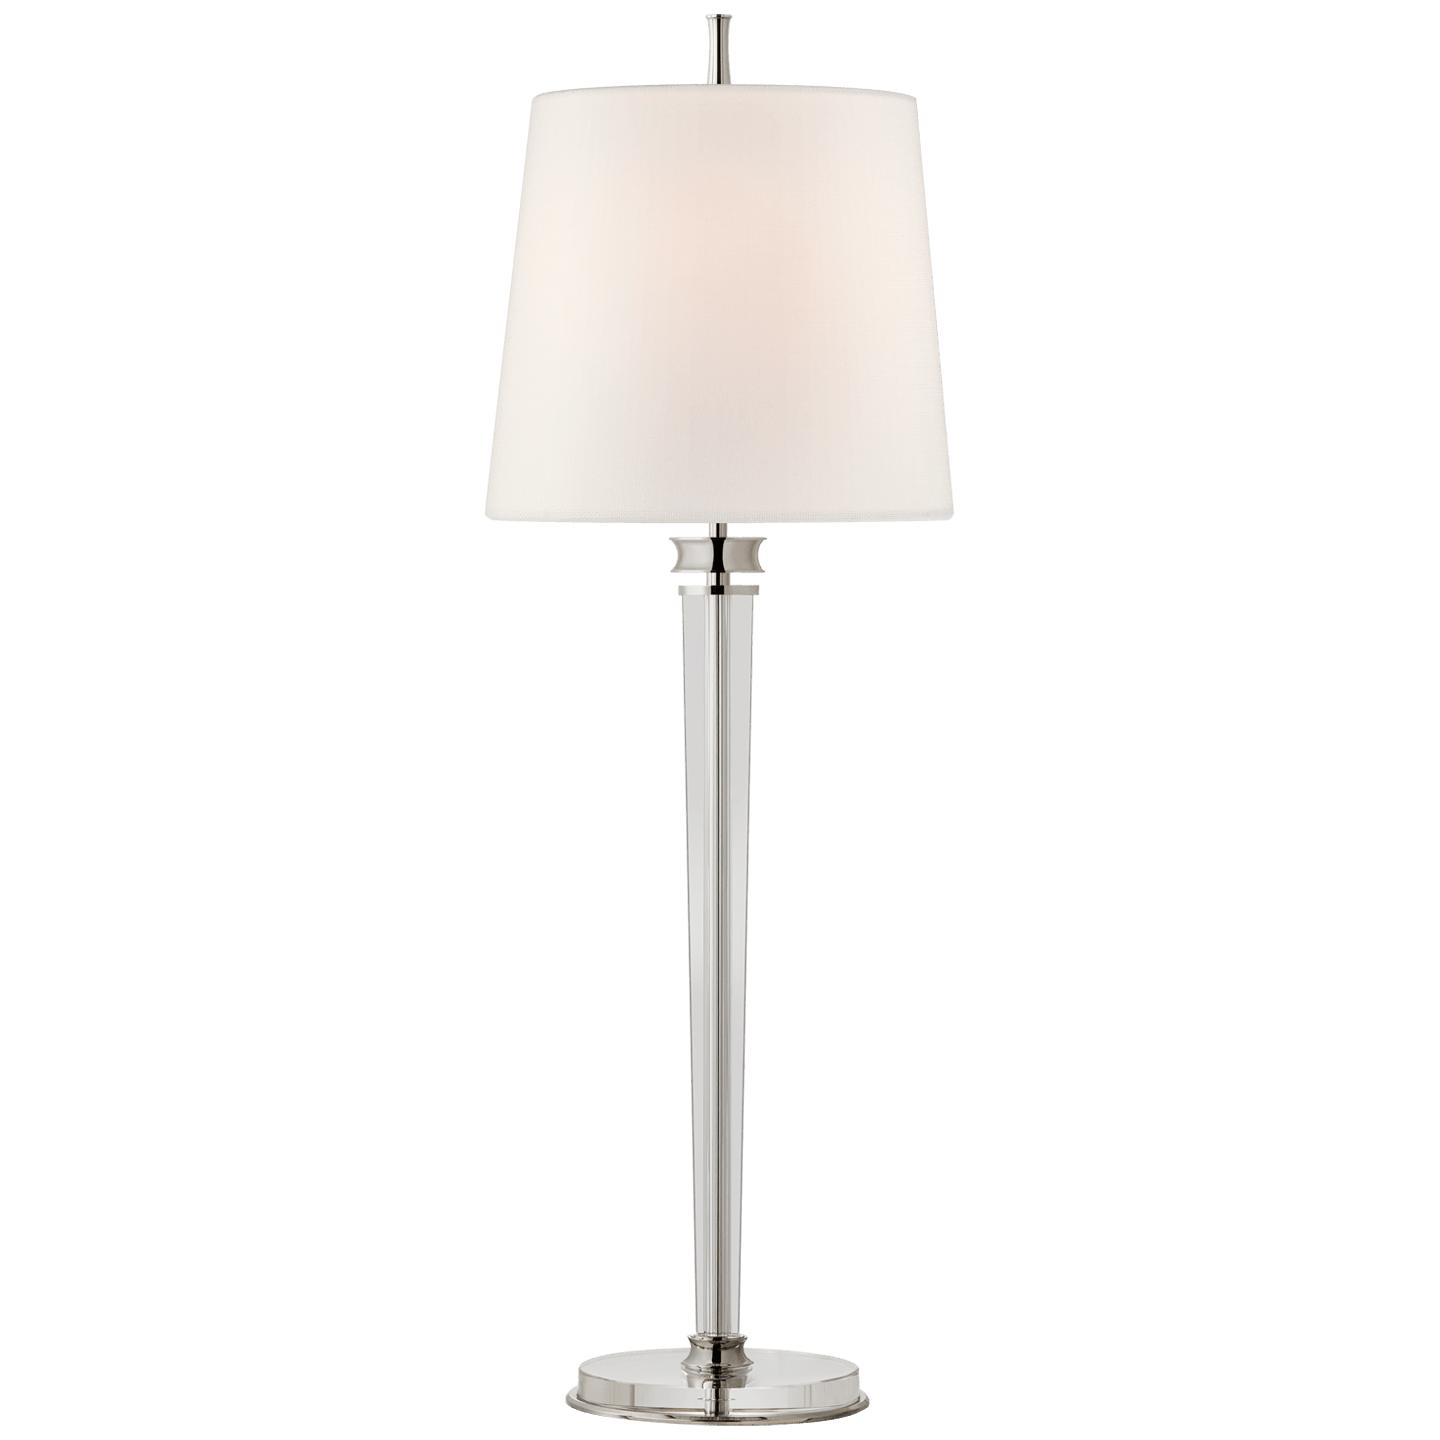 Купить Настольная лампа Lyra Buffet Lamp в интернет-магазине roooms.ru